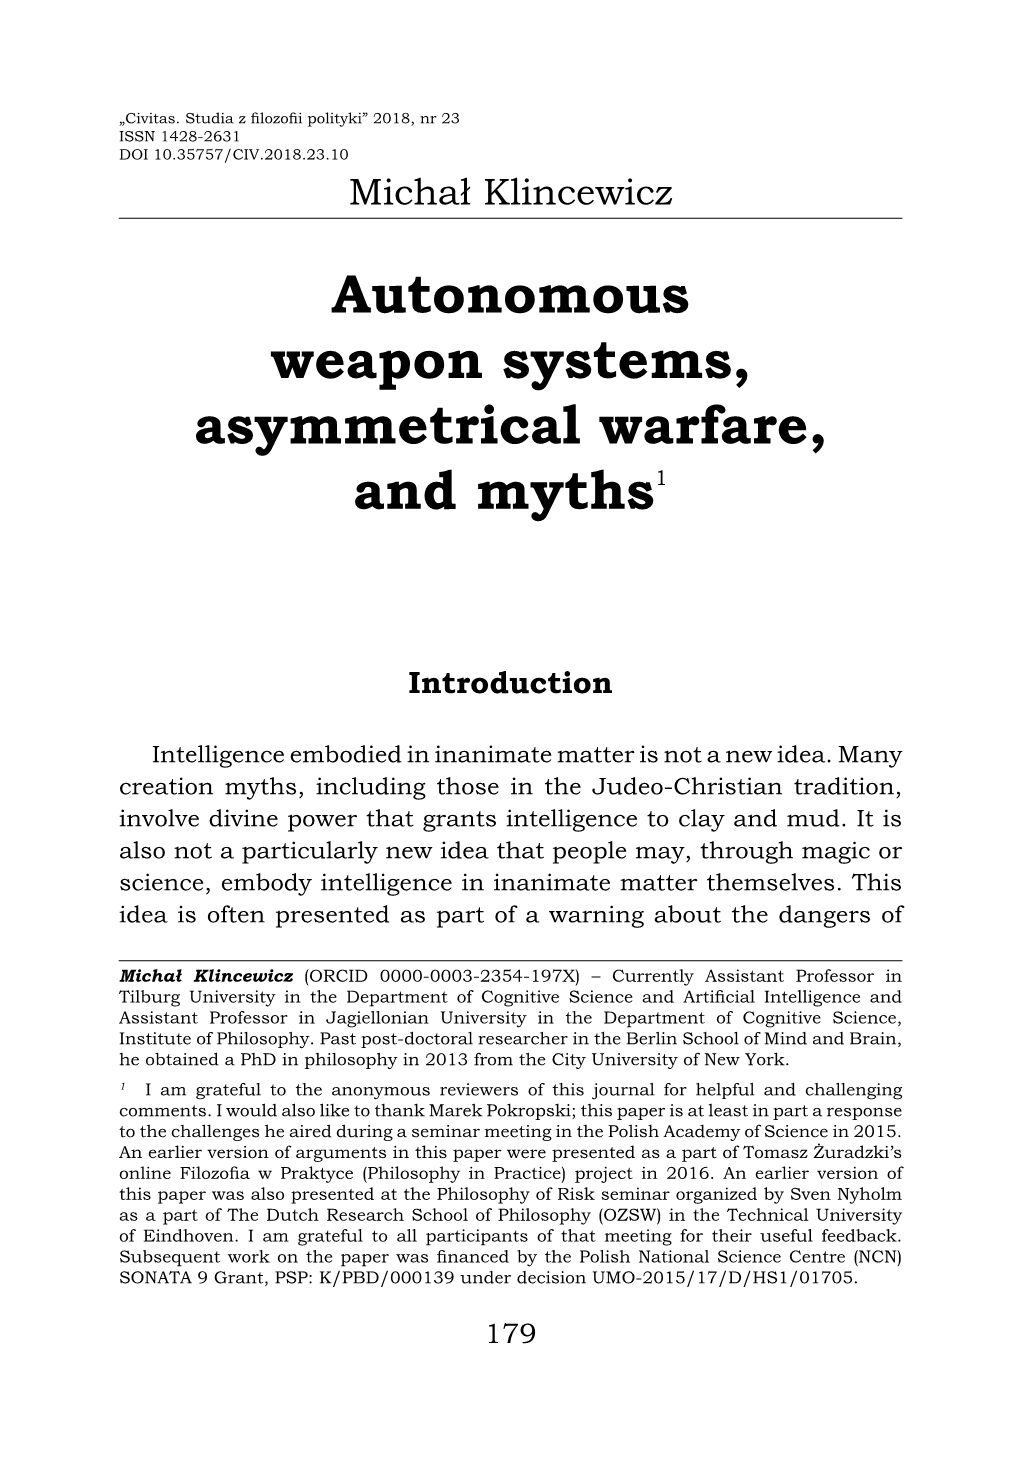 Autonomous Weapon Systems, Asymmetrical Warfare, and Myths1